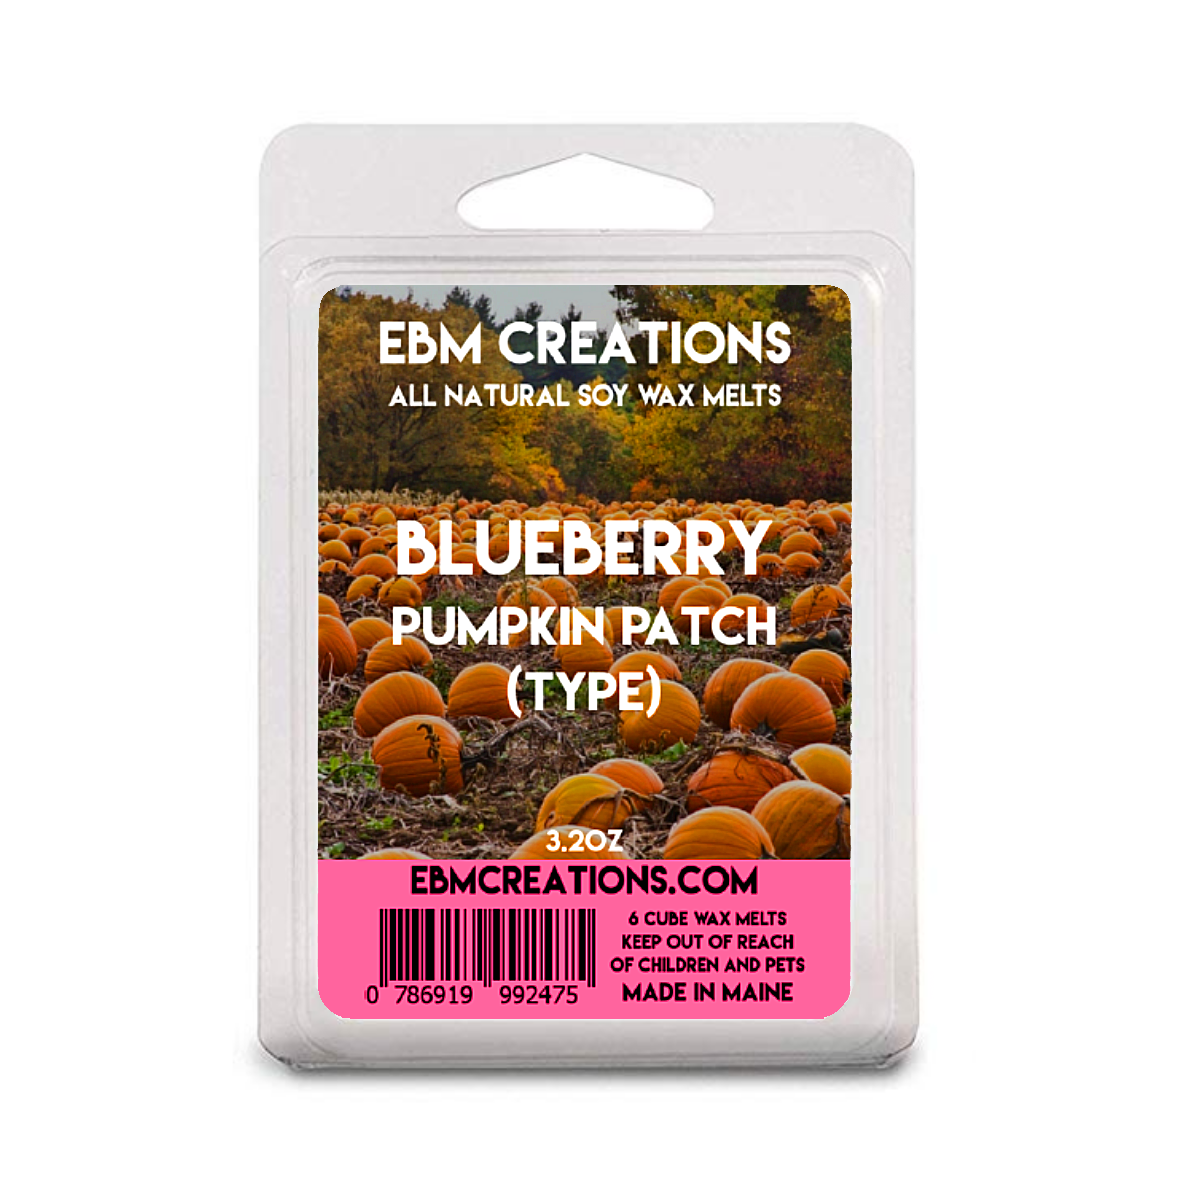 Blueberry Pumpkin Patch - 3.2 oz Clamshell